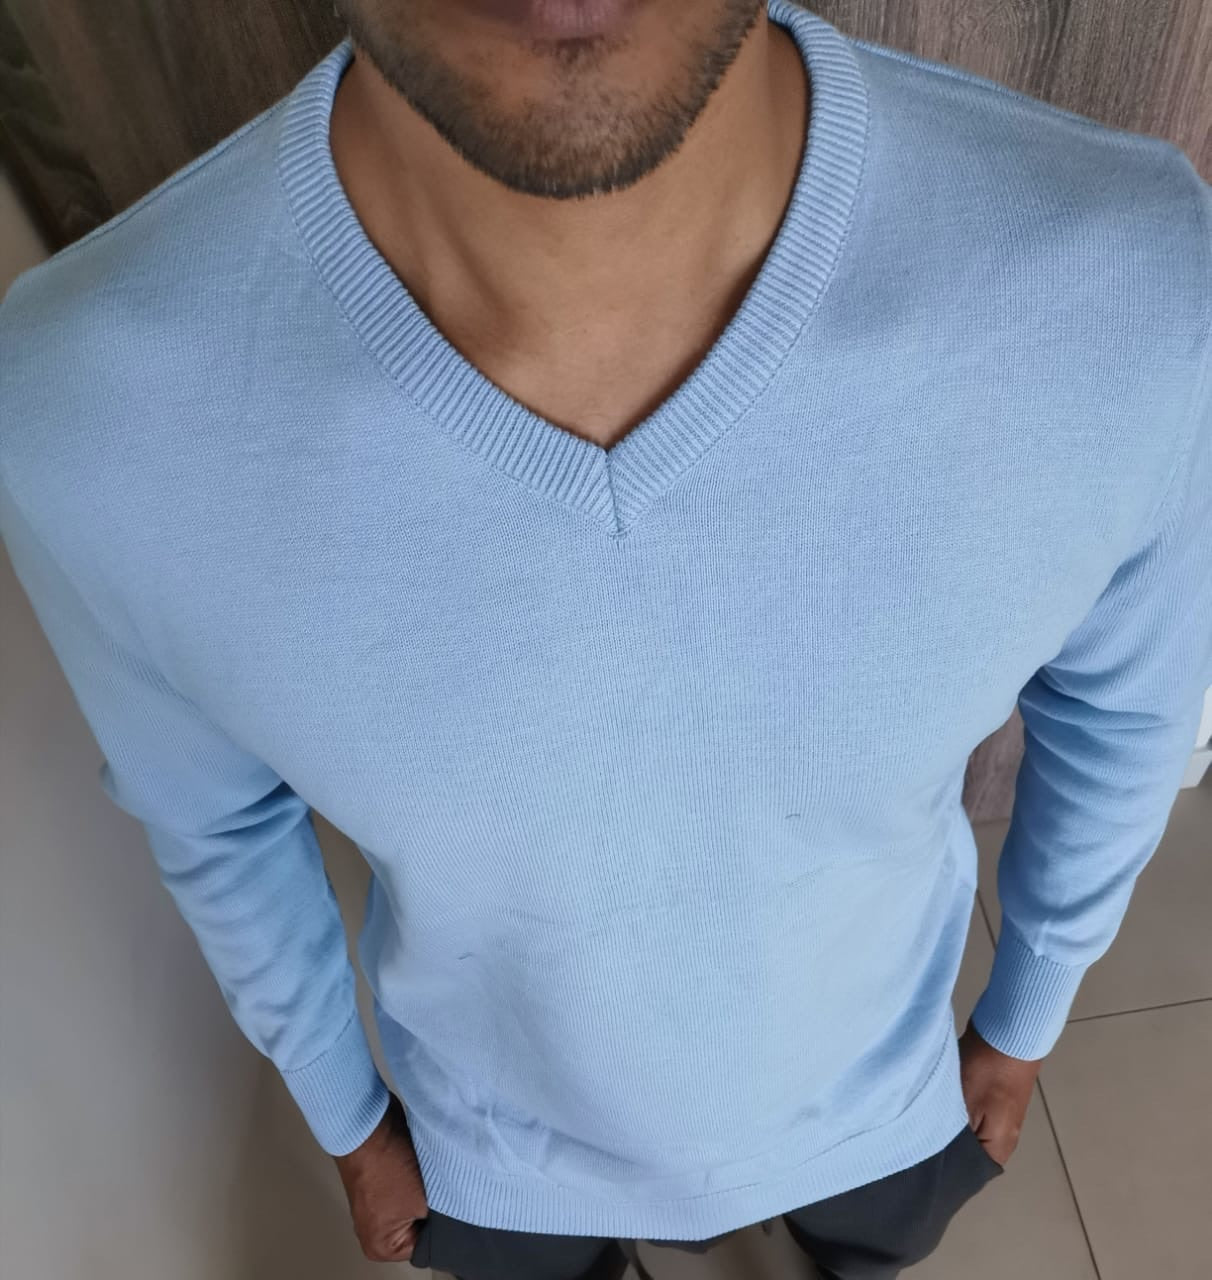 V neck sweater